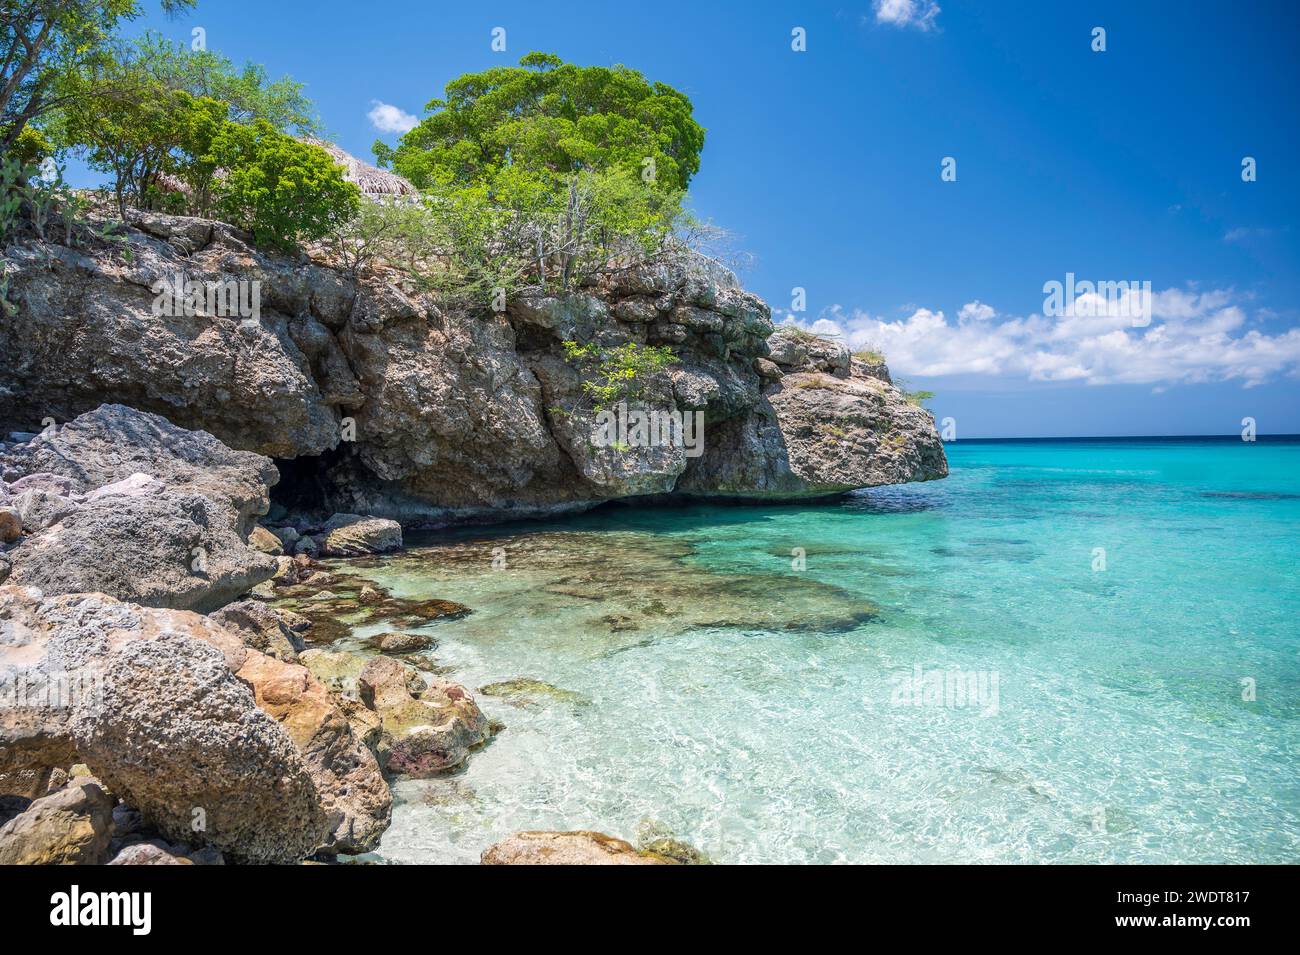 Il cristallino oceano turchese, sulla spiaggia di Grote Knip, famosa per le sue acque blu, sull'isola caraibica olandese di Curacao, Indie occidentali, Caraibi Foto Stock